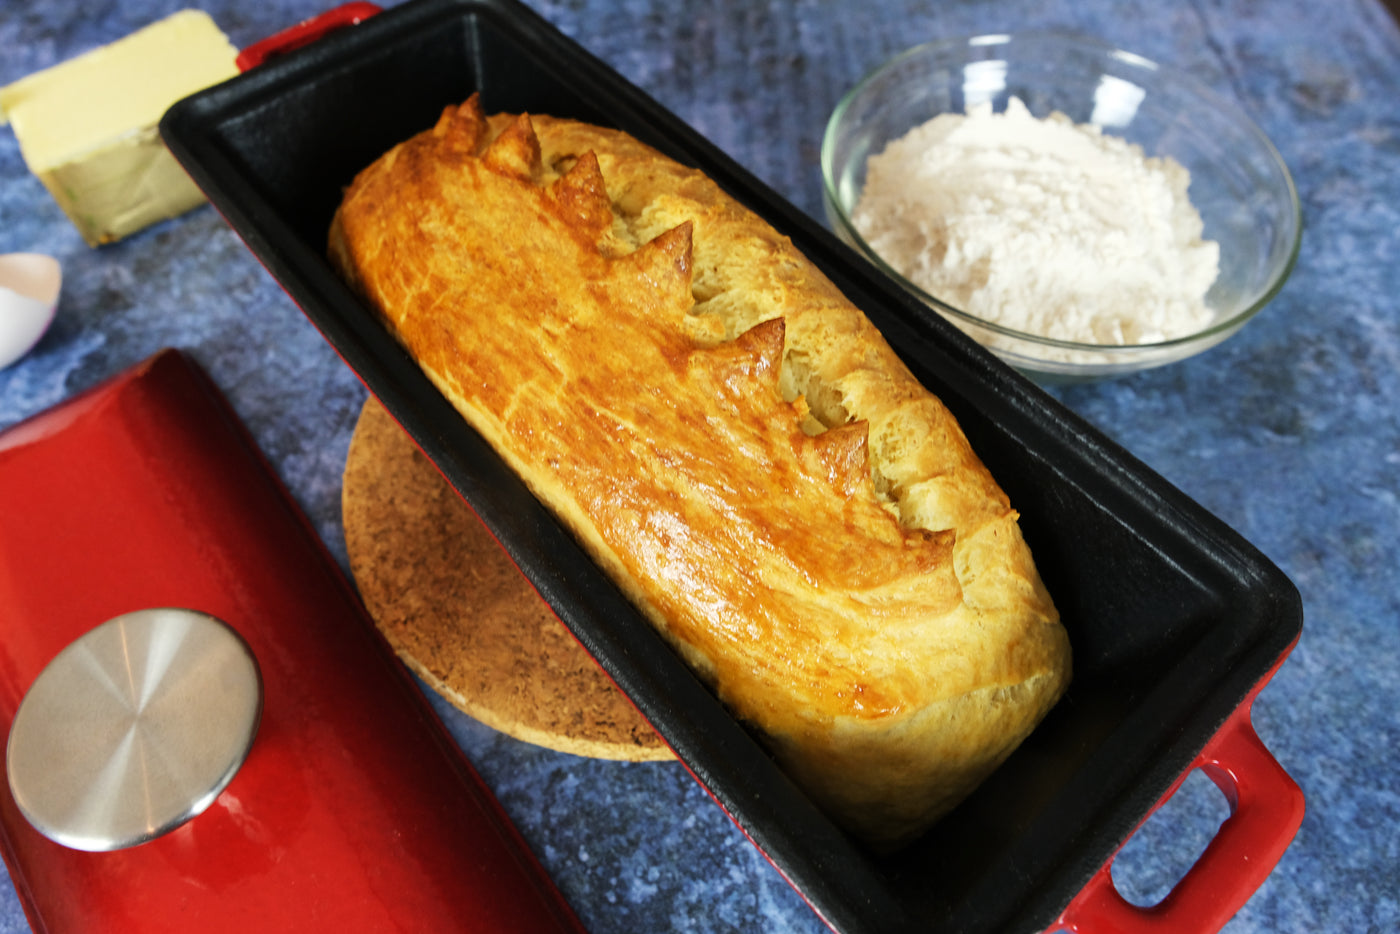 Emaljeret støbejernsbrødform med låg – ovnsikker form til bagning og madlavning - brødform